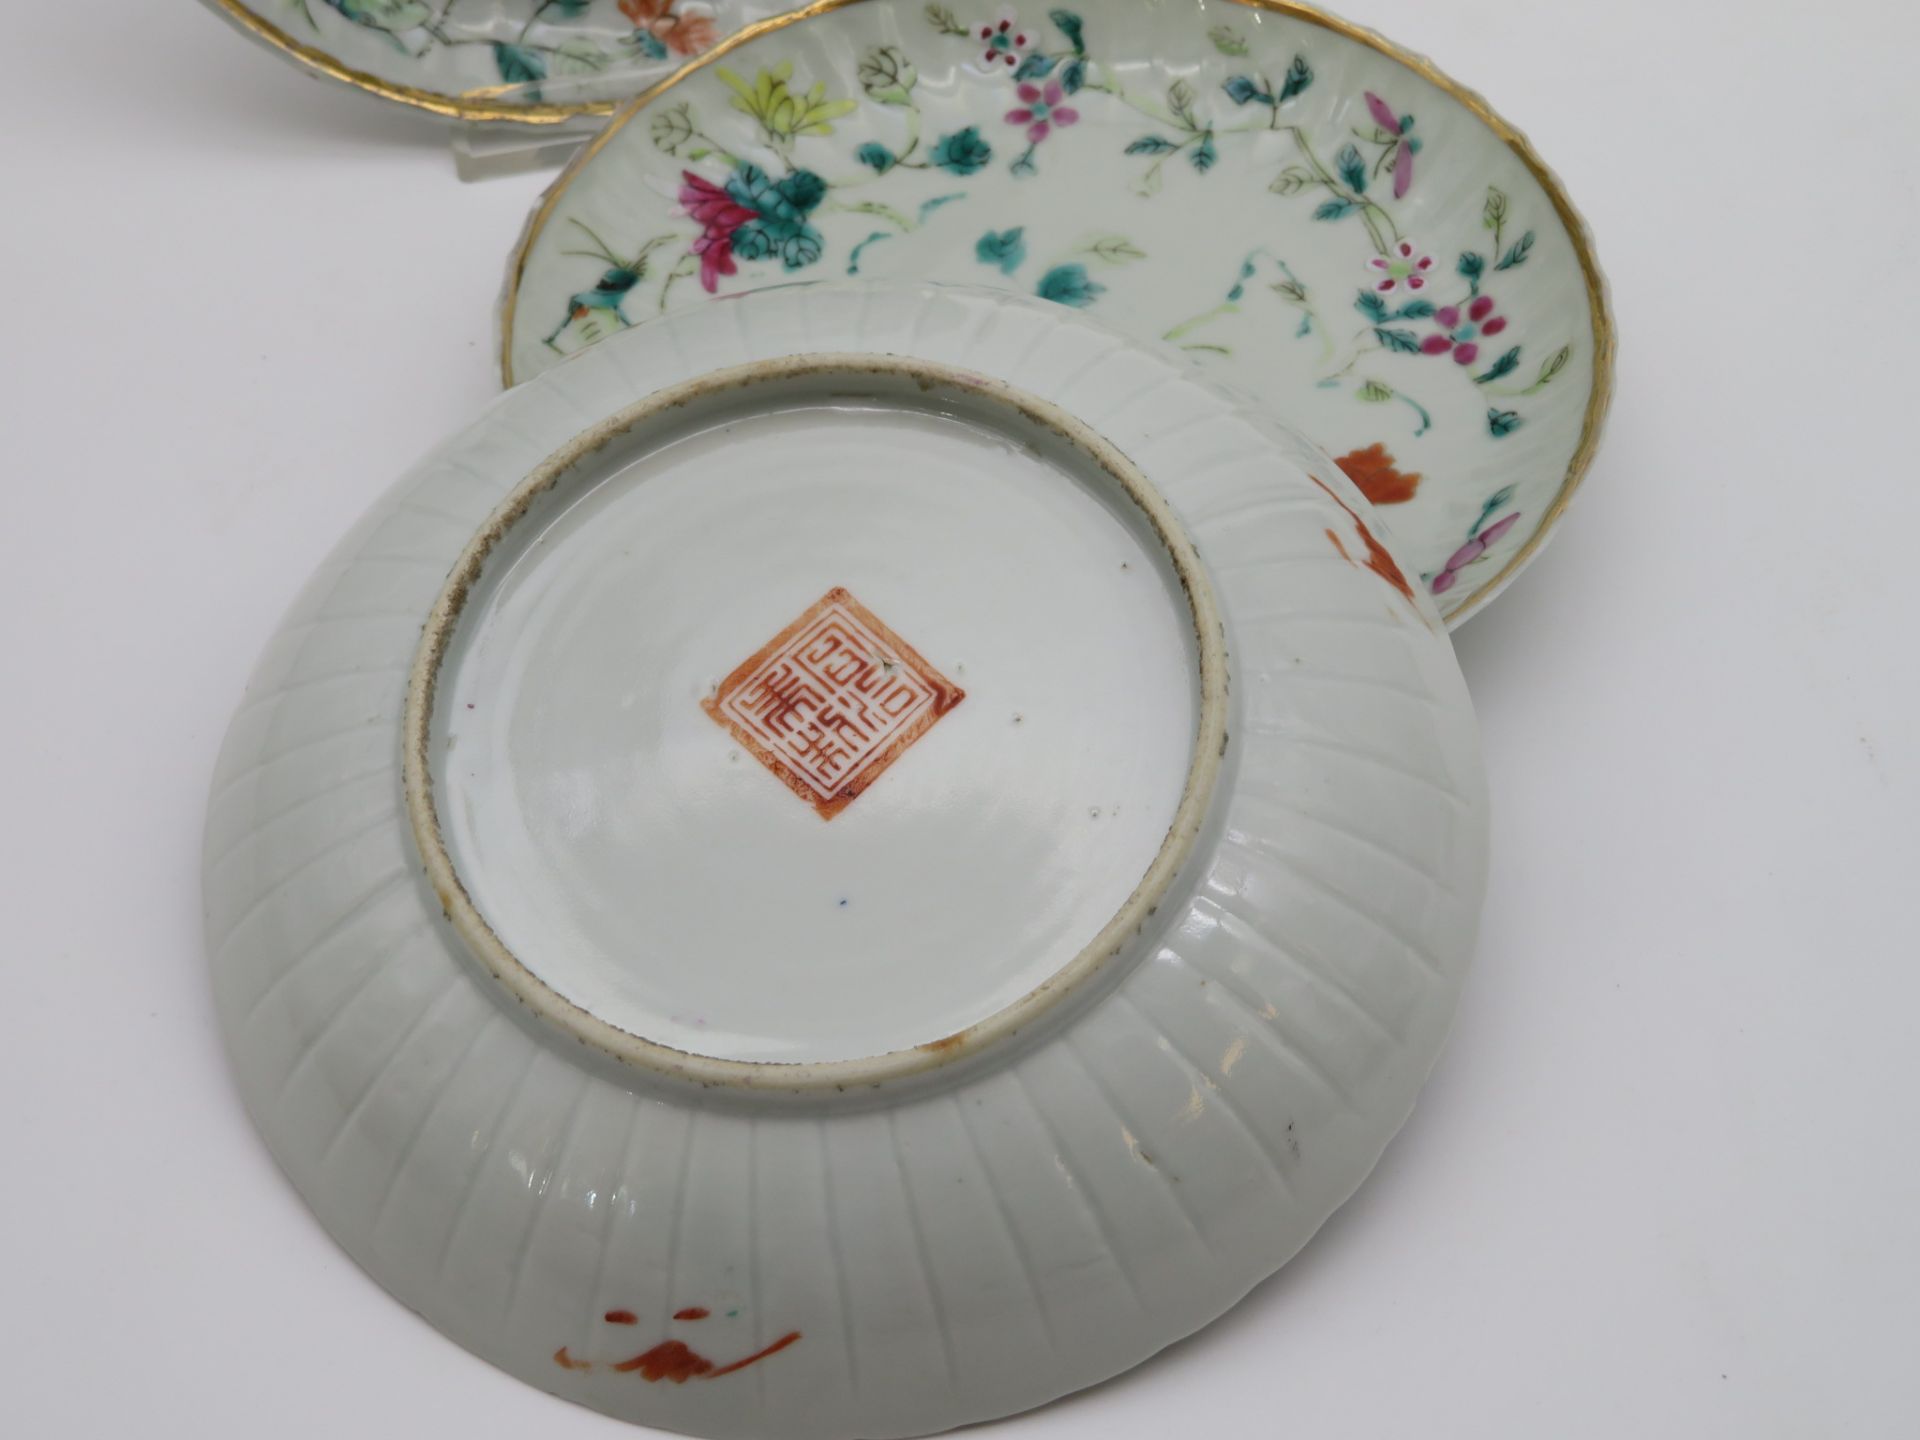 3 Teller, China, antik, Weißporzellan mit polychromer Bemalung, rote Stempelmarke, Chips, h 3 cm, d - Bild 2 aus 2